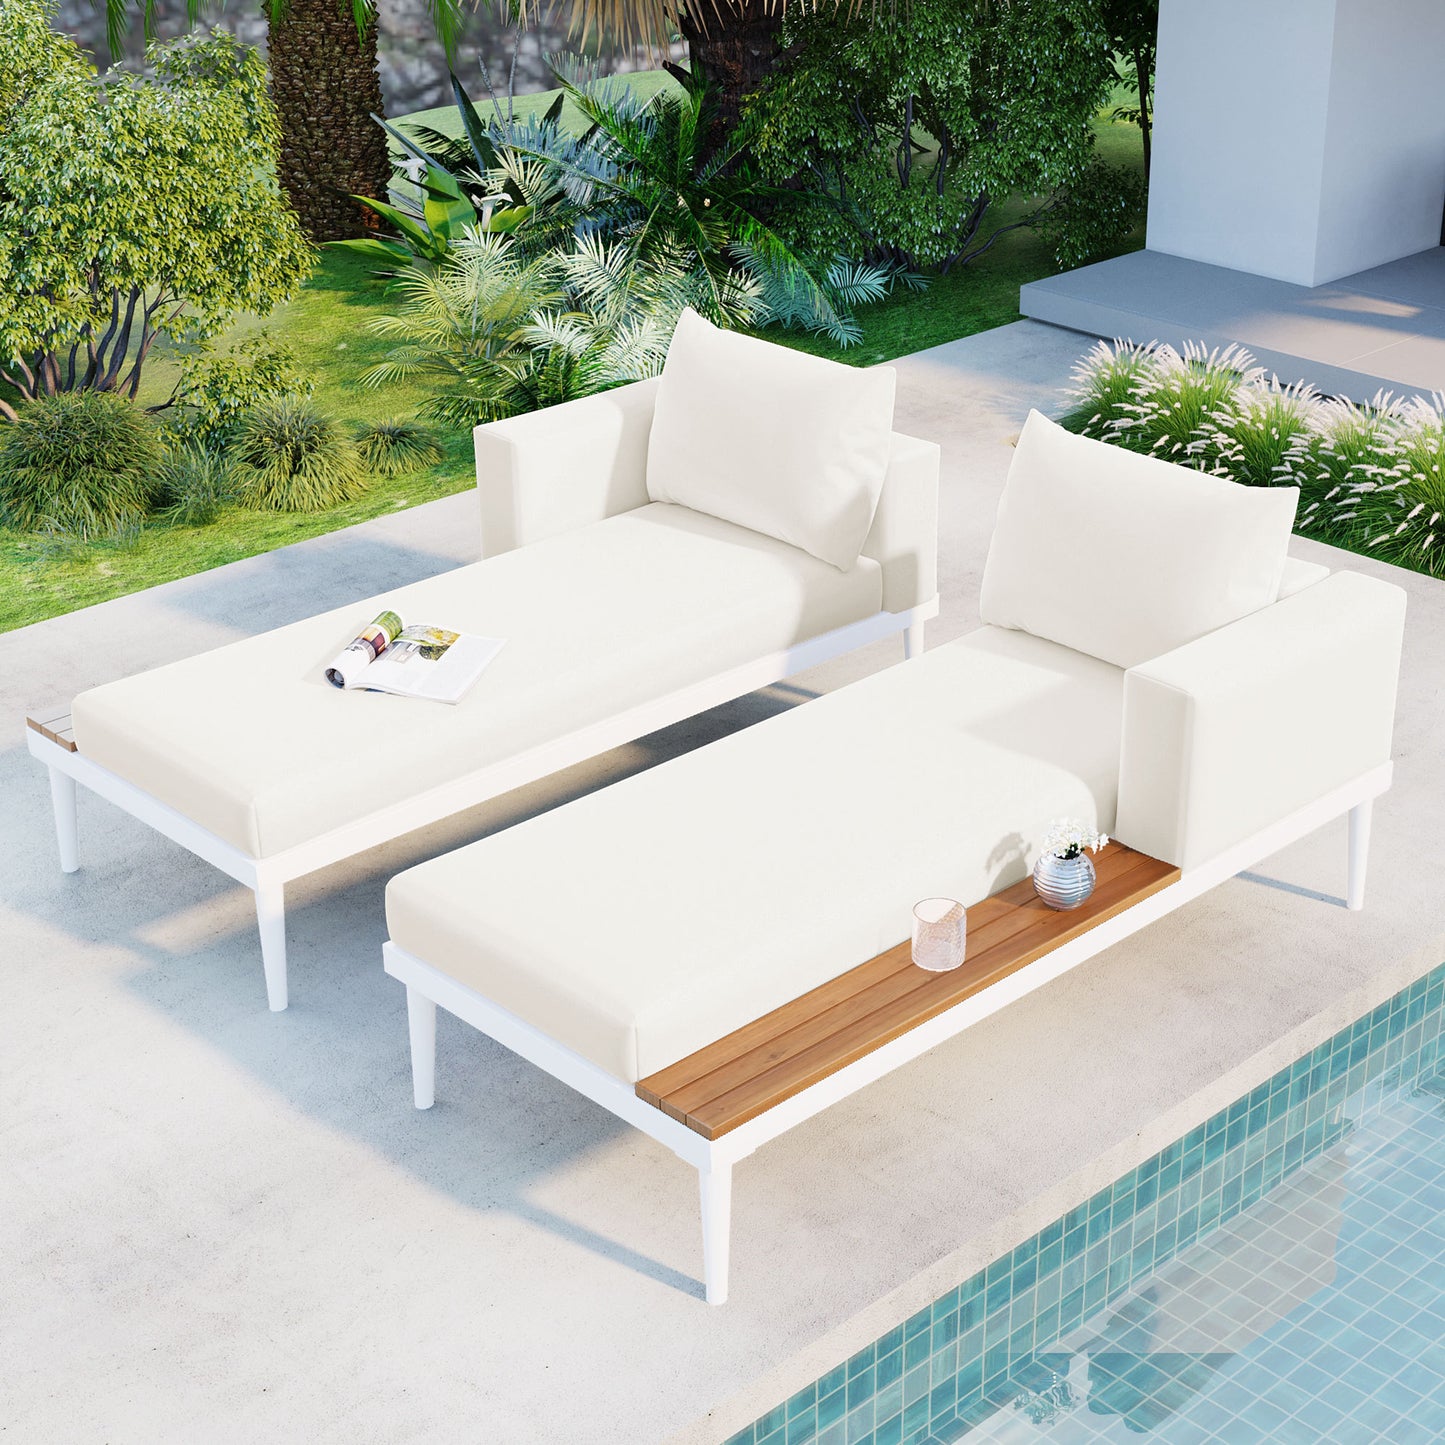 TOPMAX Lit de repos d'extérieur moderne en métal avec espaces latéraux en bois pour boissons, chaise longue rembourrée 2 en 1 pour bord de piscine, balcon, terrasse, beige